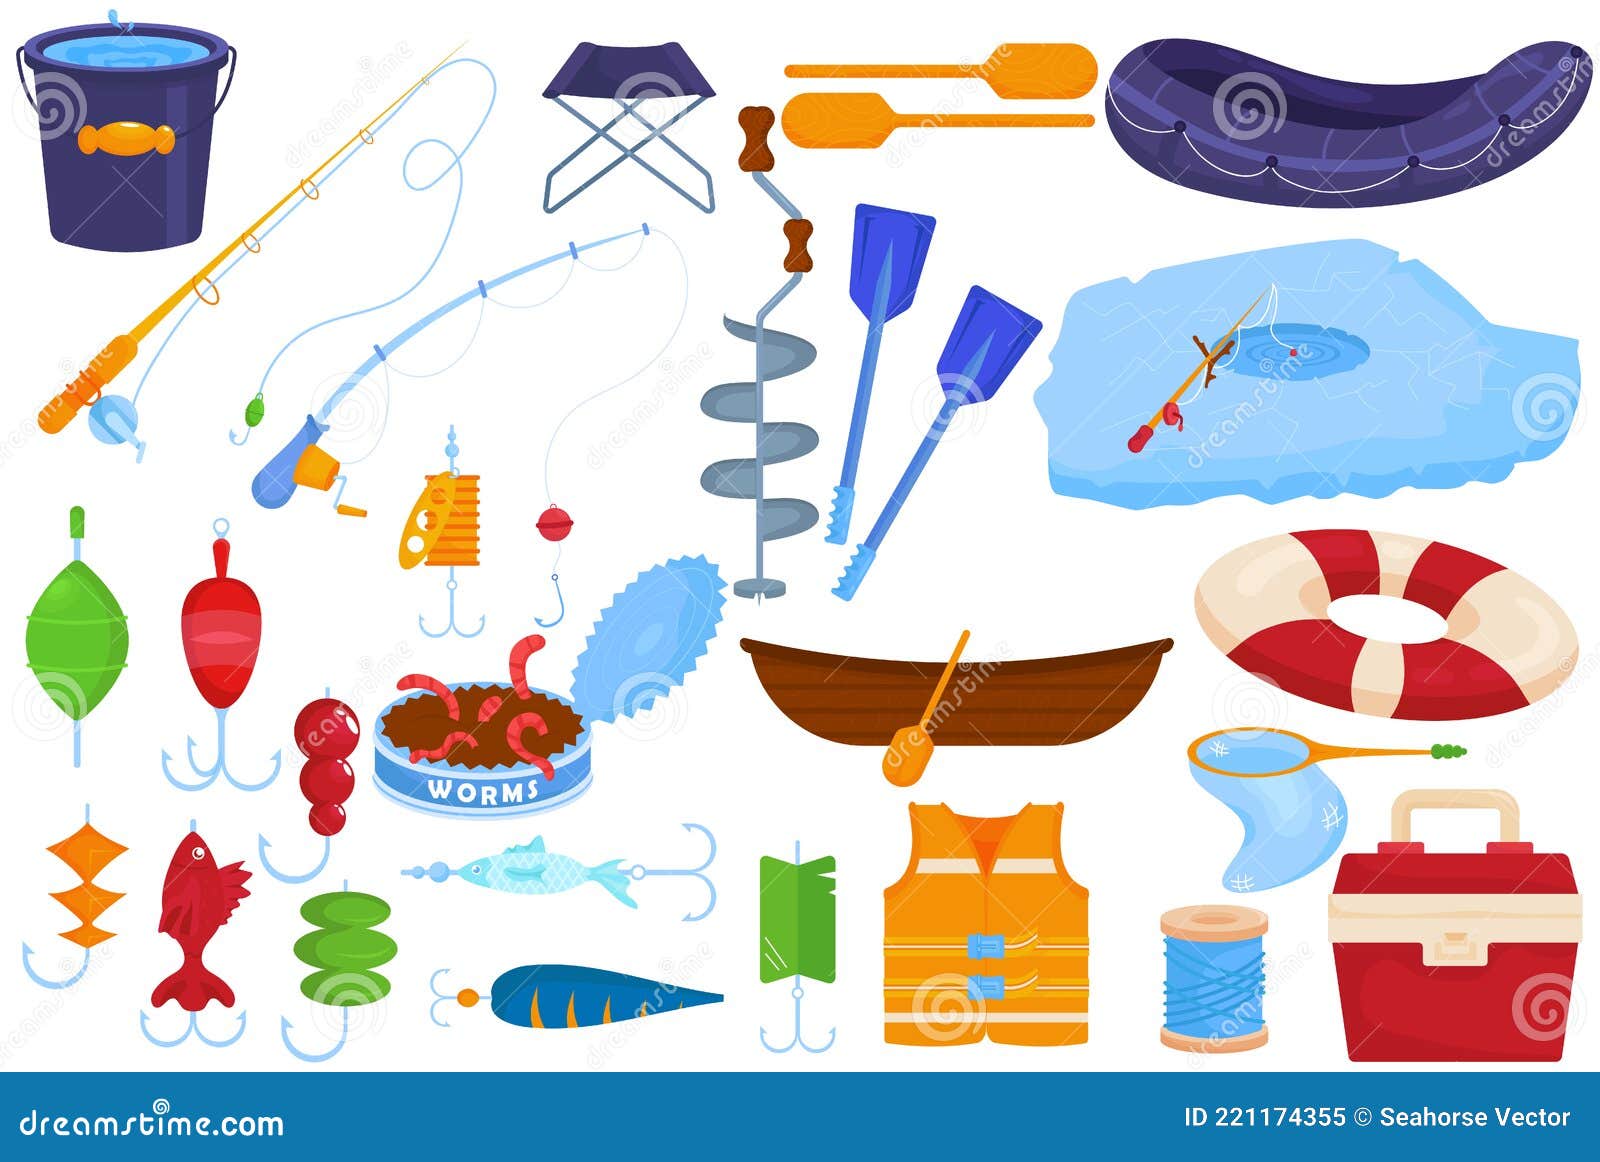 https://thumbs.dreamstime.com/z/conjunto-de-pesca-aislado-en-la-ilustraci%C3%B3n-del-vector-recogida-blanca-equipo-para-pescar-lancha-gancho-y-caricatura-anzuelo-el-221174355.jpg